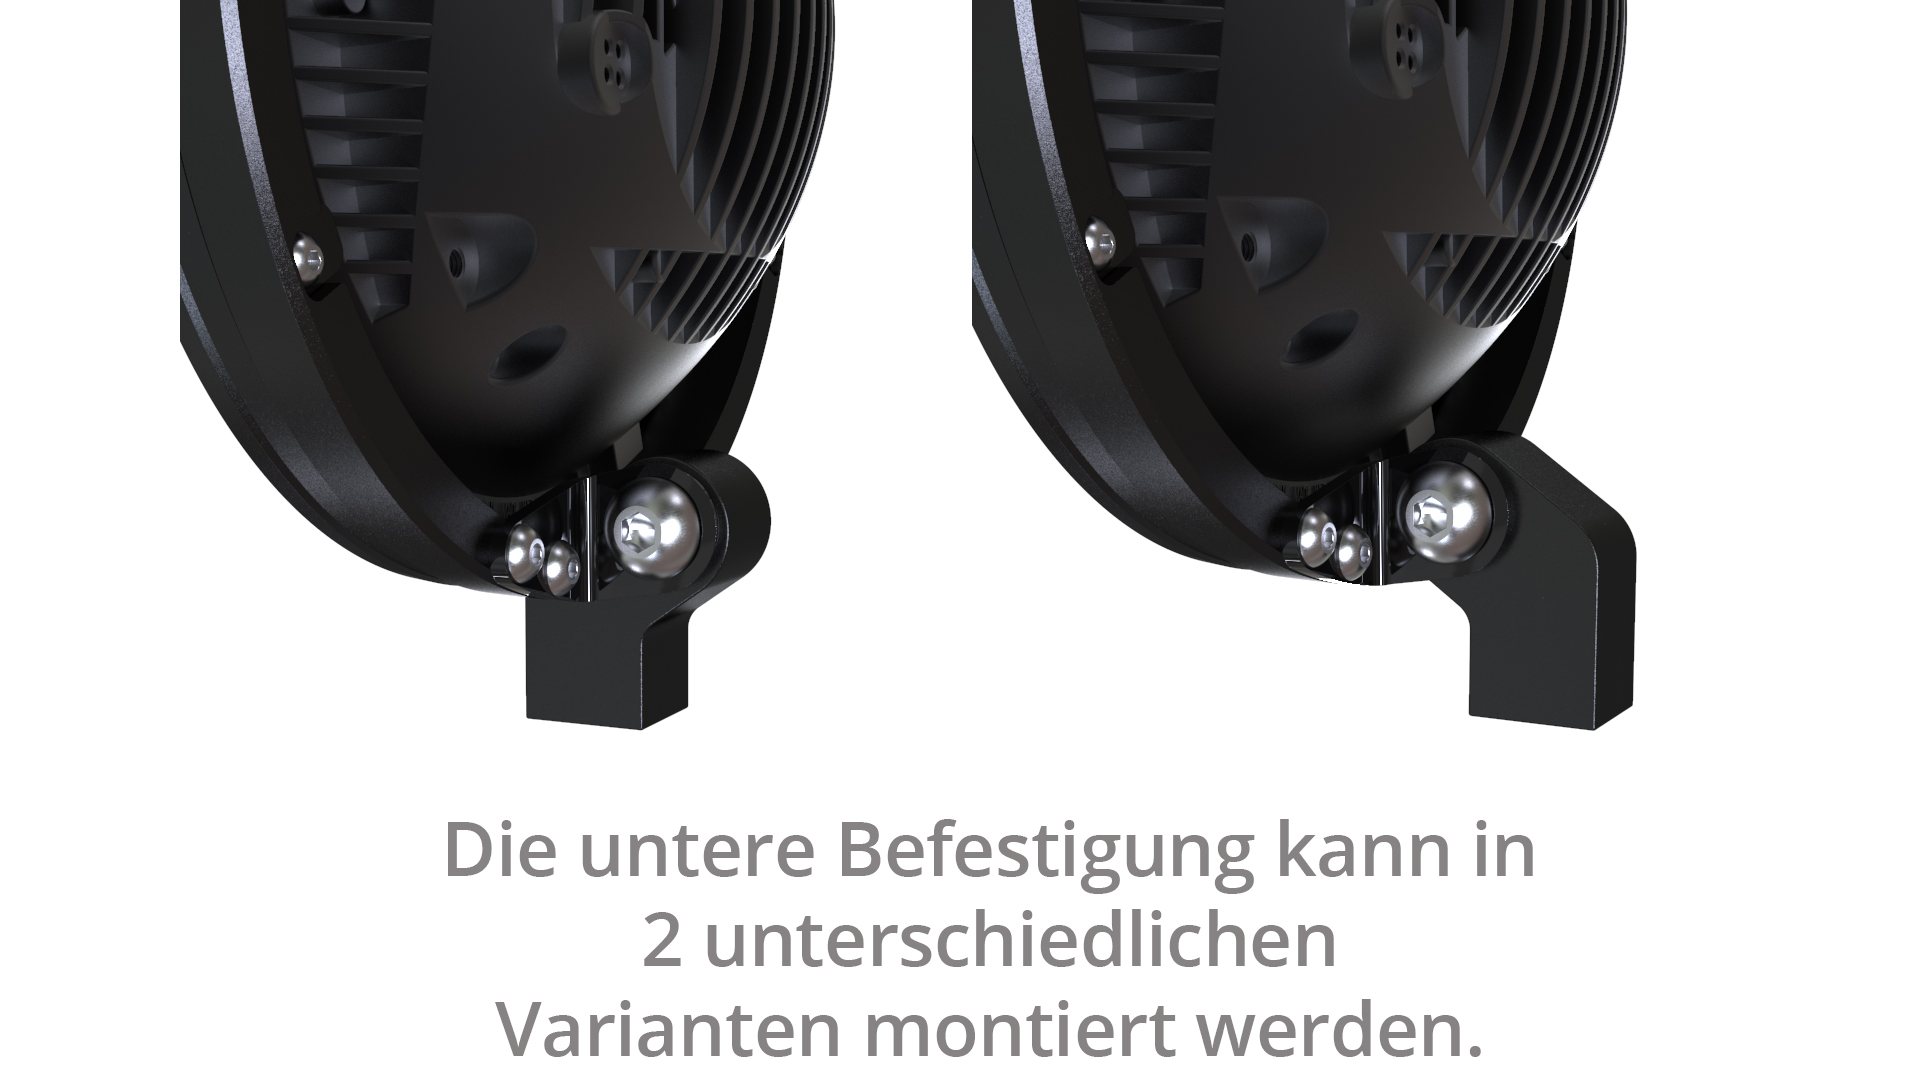 5 3/4 Zoll LED Hauptscheinwerfer FRAME-R2 TYP 7 mit Standlichtring, rund, schwarz. Erhältlich mit seitlicher und unterer Befestigung,  E-geprüft.